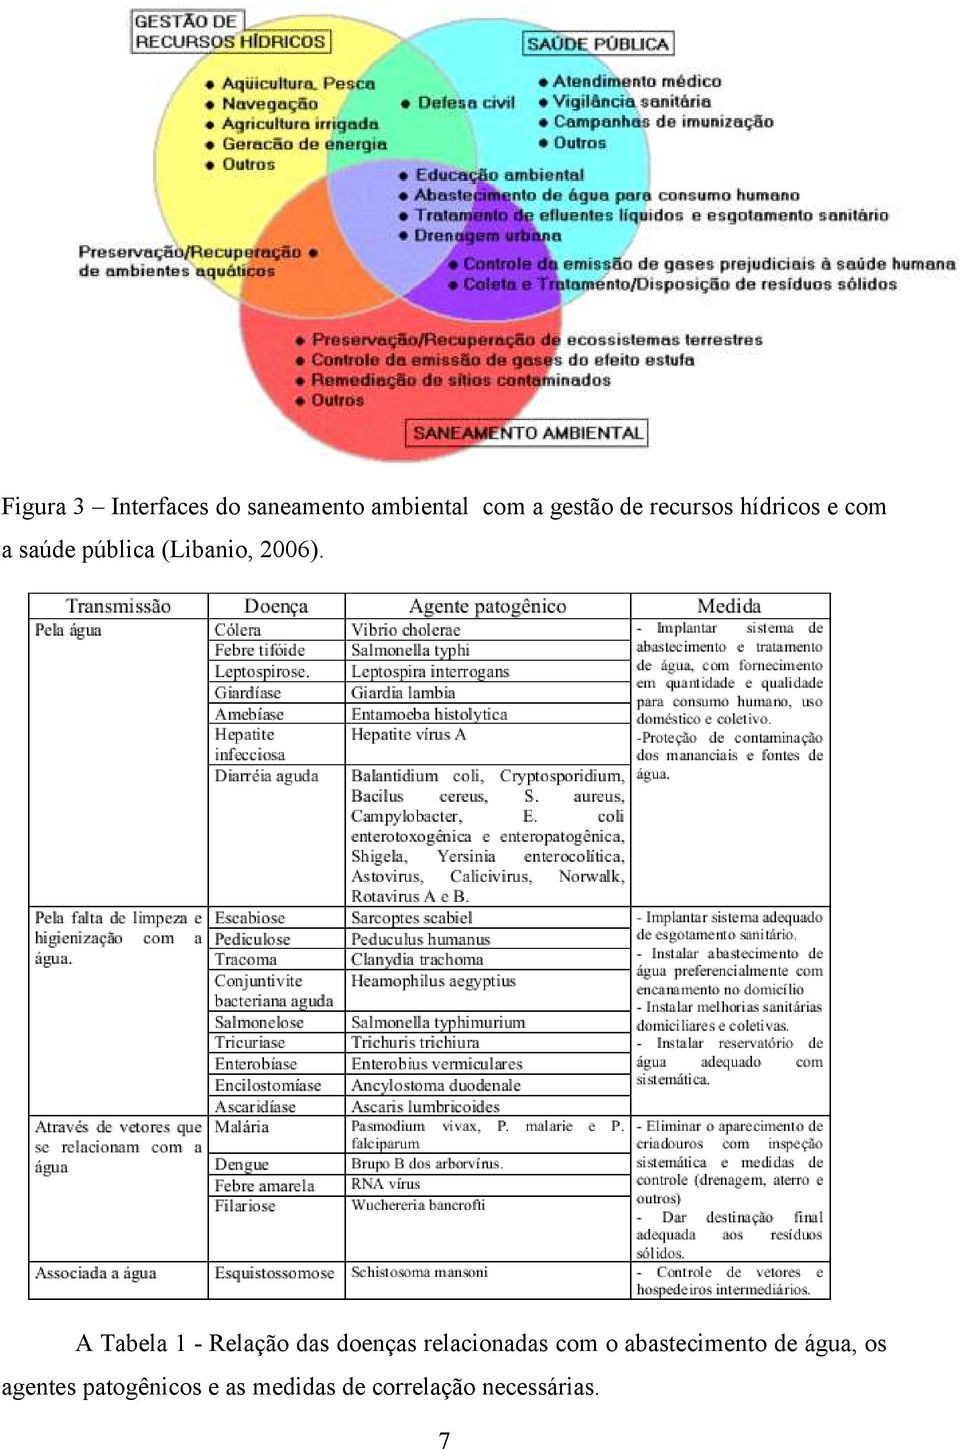 A Tabela 1 - Relação das doenças relacionadas com o